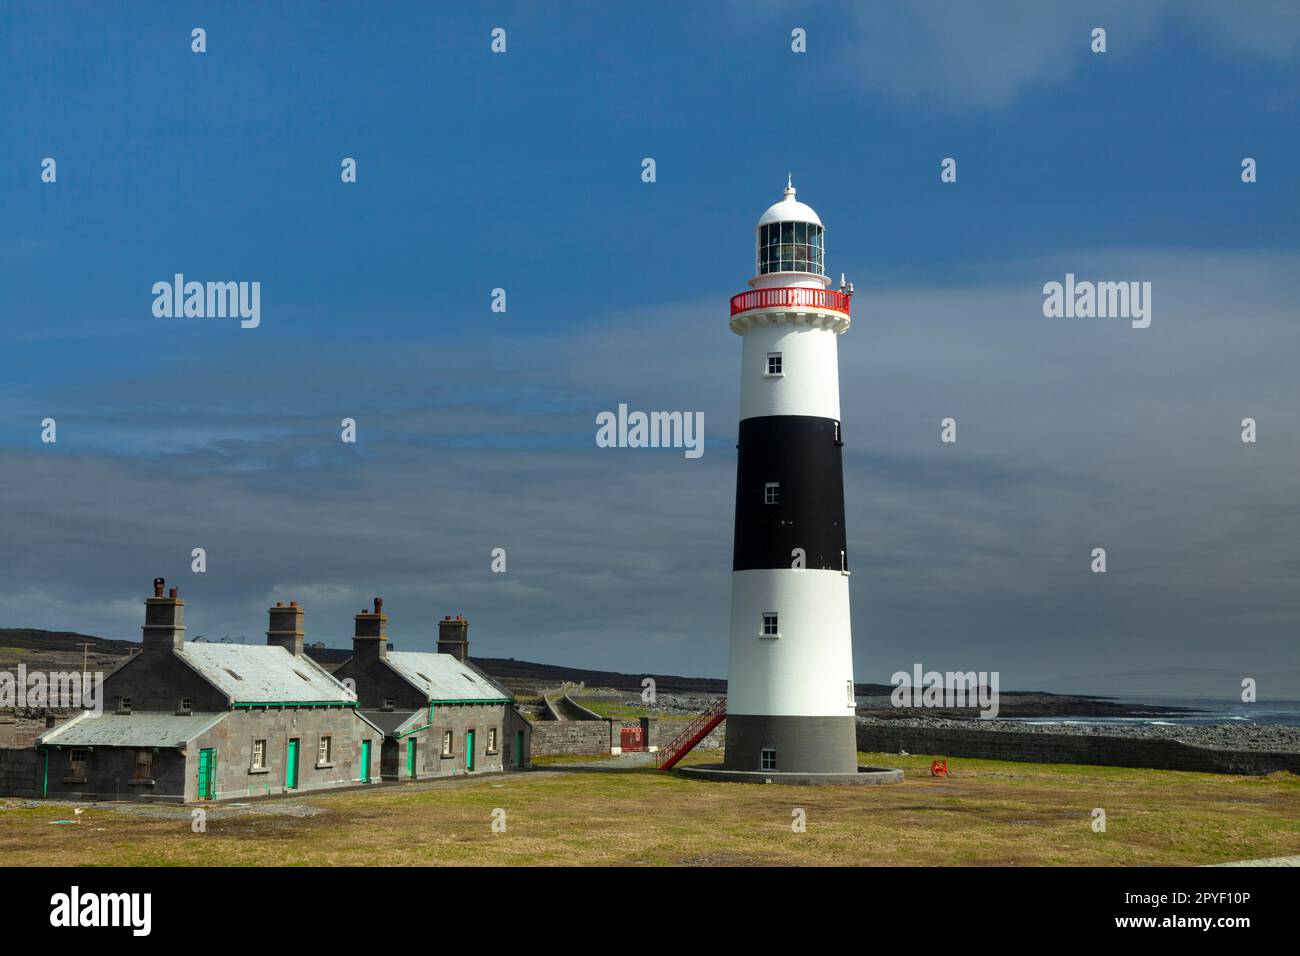 Phare sur Inis Oírr (Inisheer), la plus petite île des îles d'Aran, sur la voie de l'Atlantique sauvage dans le comté de Galway en Irlande Banque D'Images